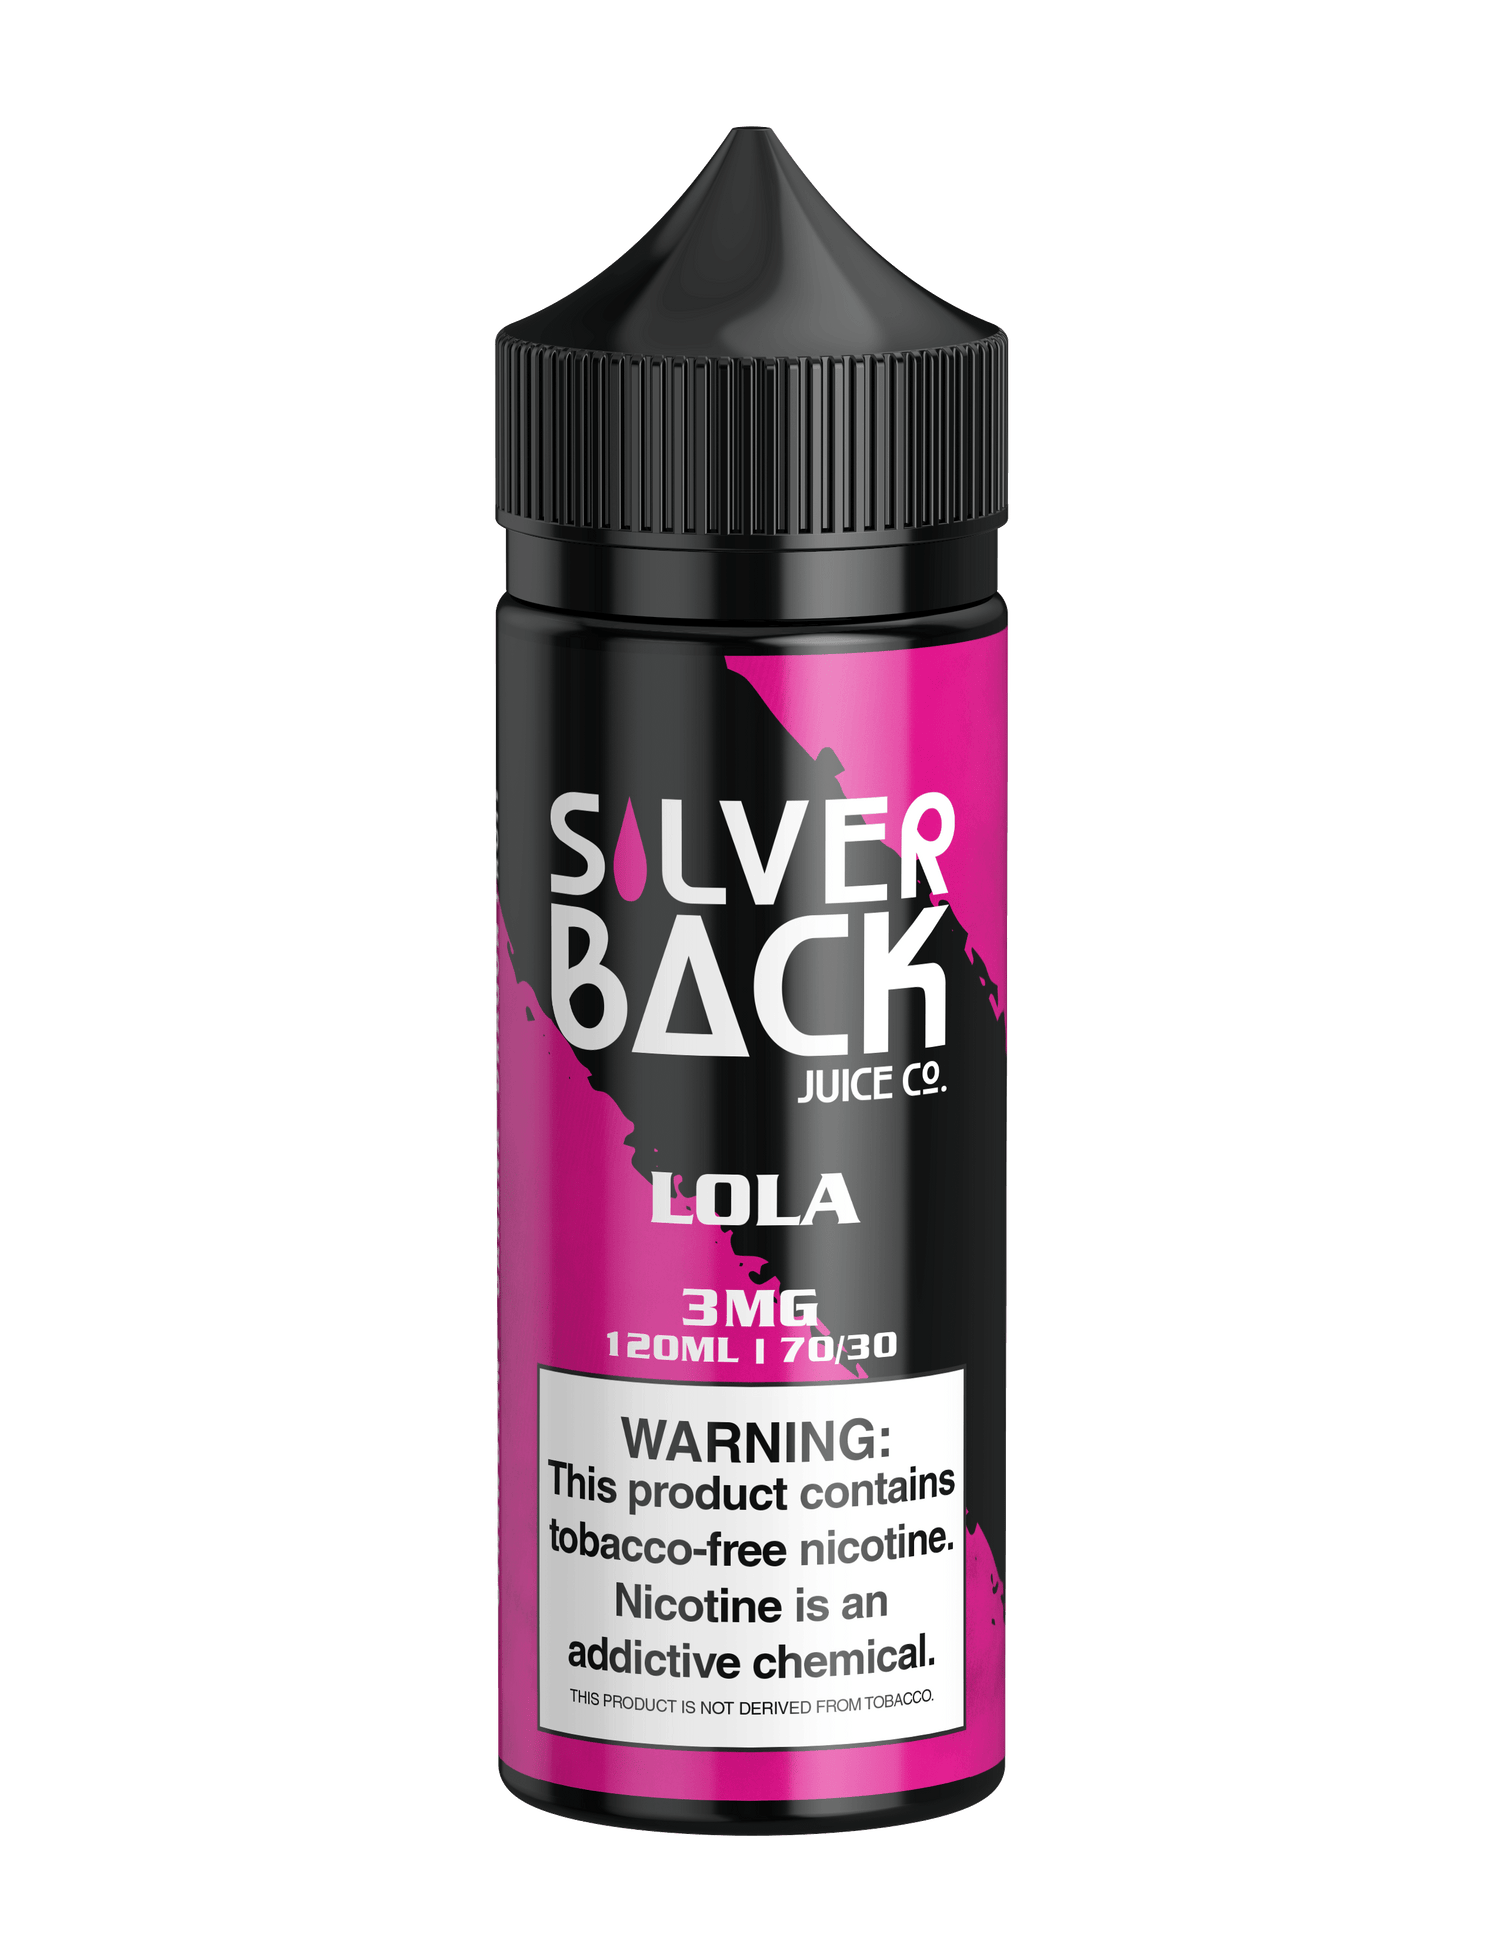 Lola - Silverback Juice Co. - 120mL